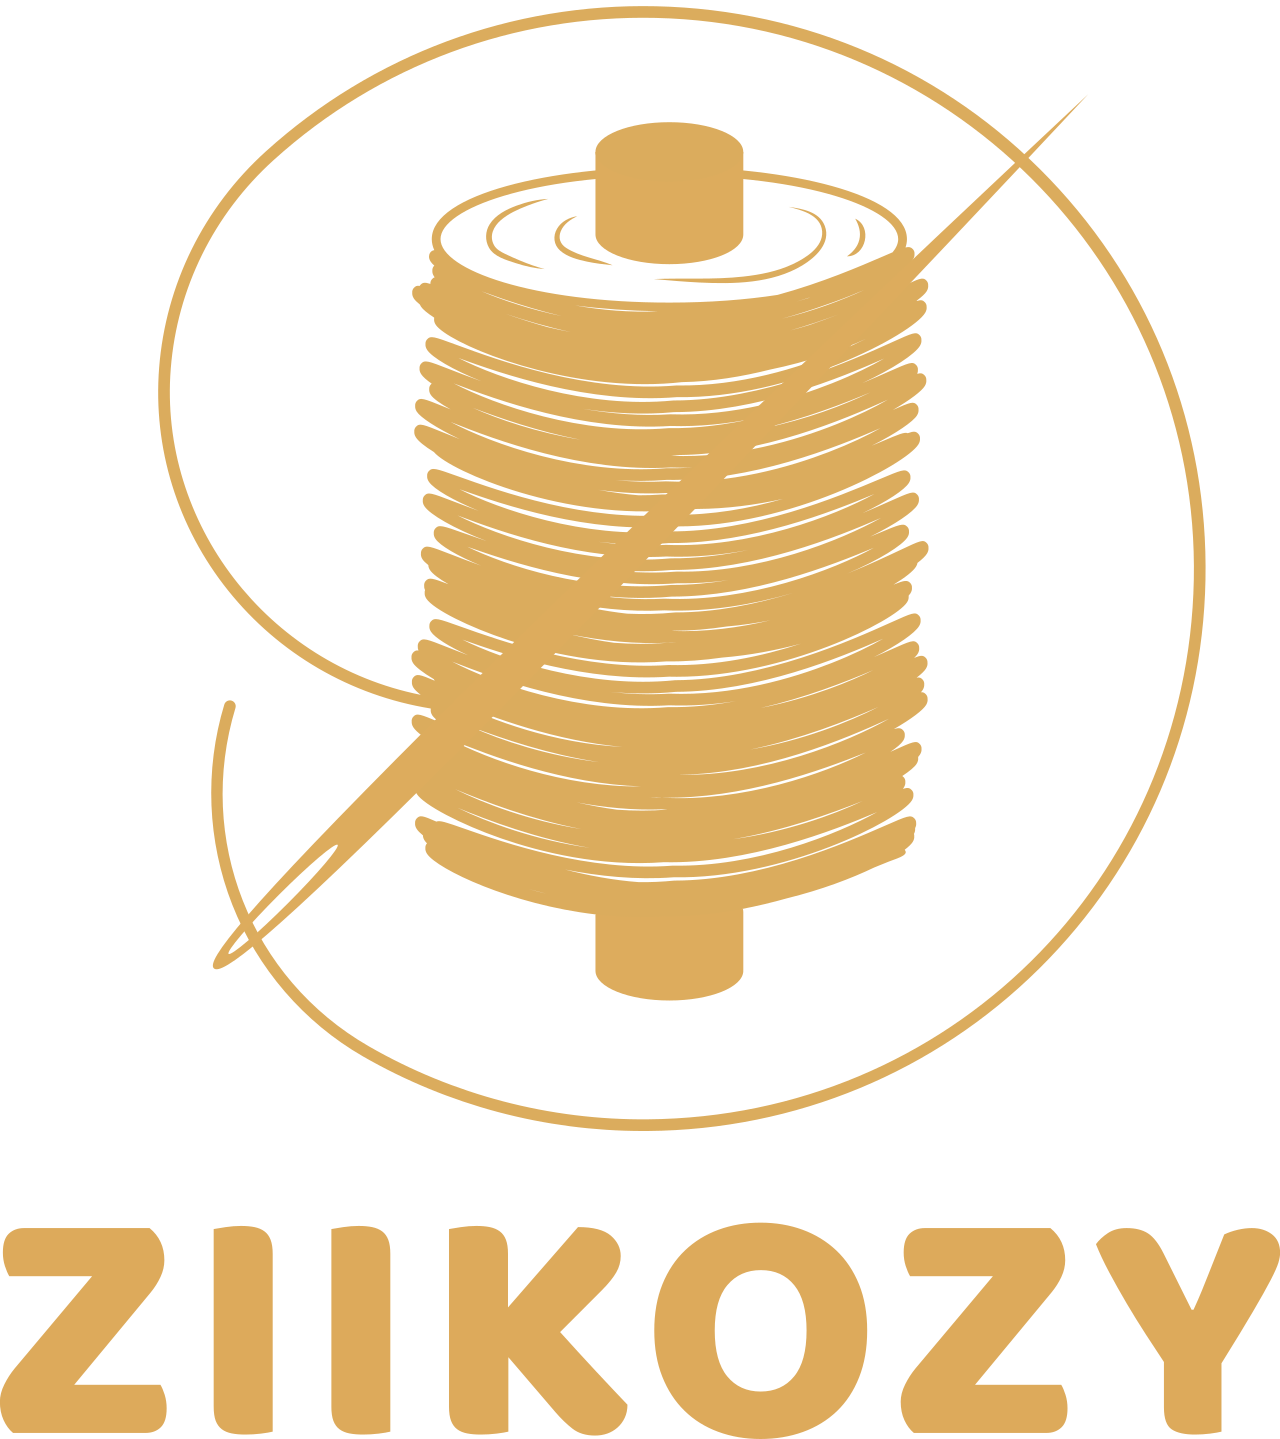 ziikozy's logo